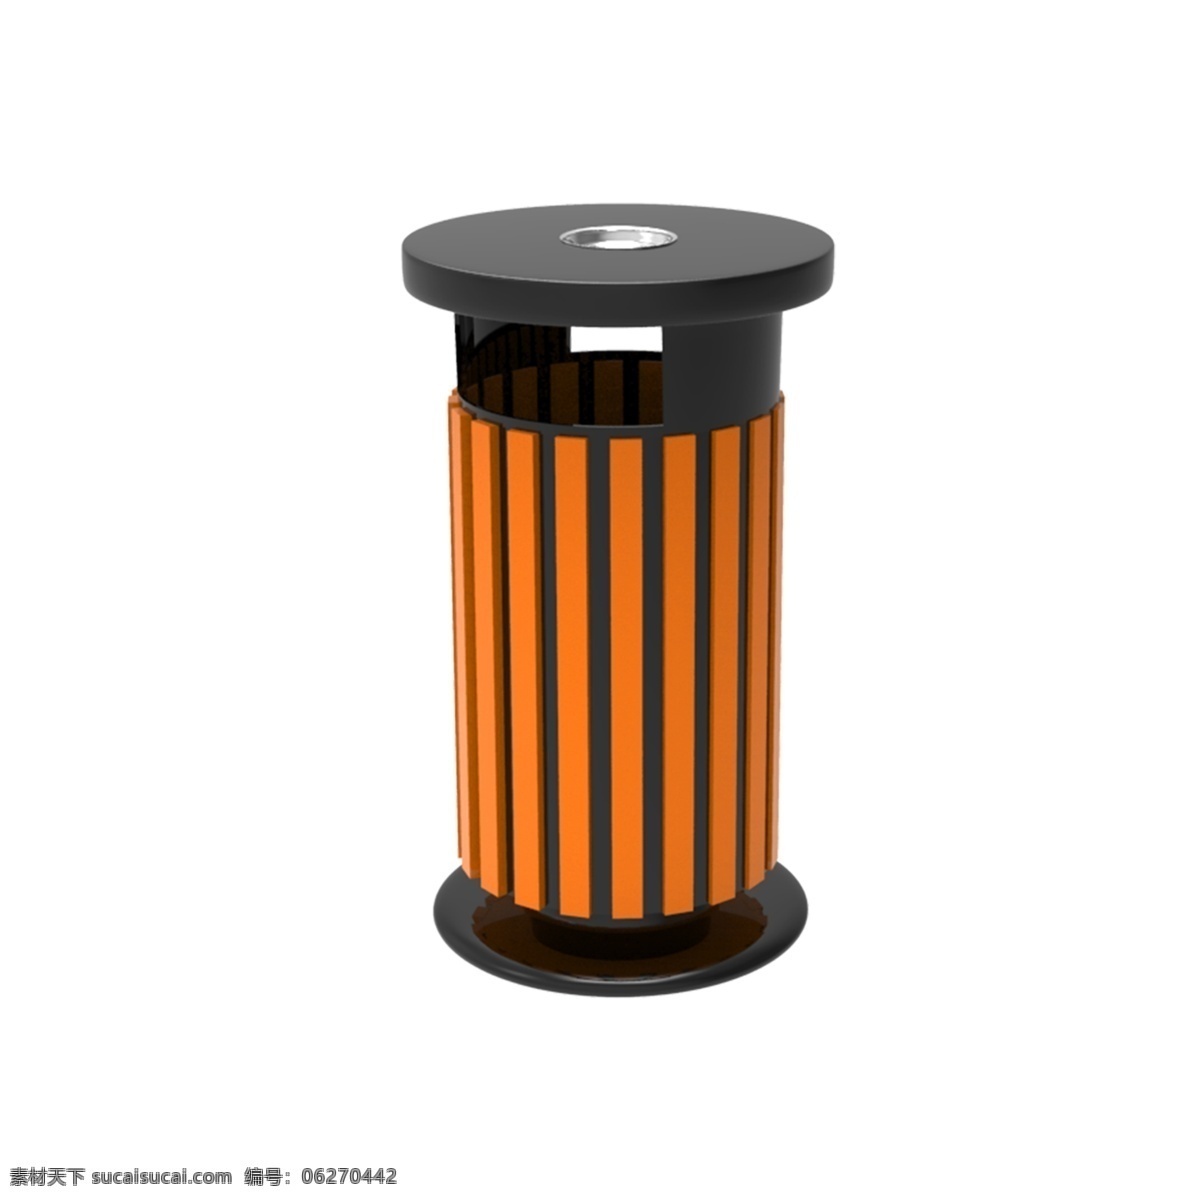 仿真 垃圾桶 免 抠 景区垃圾桶 园林装饰 木制垃圾桶 保护环境